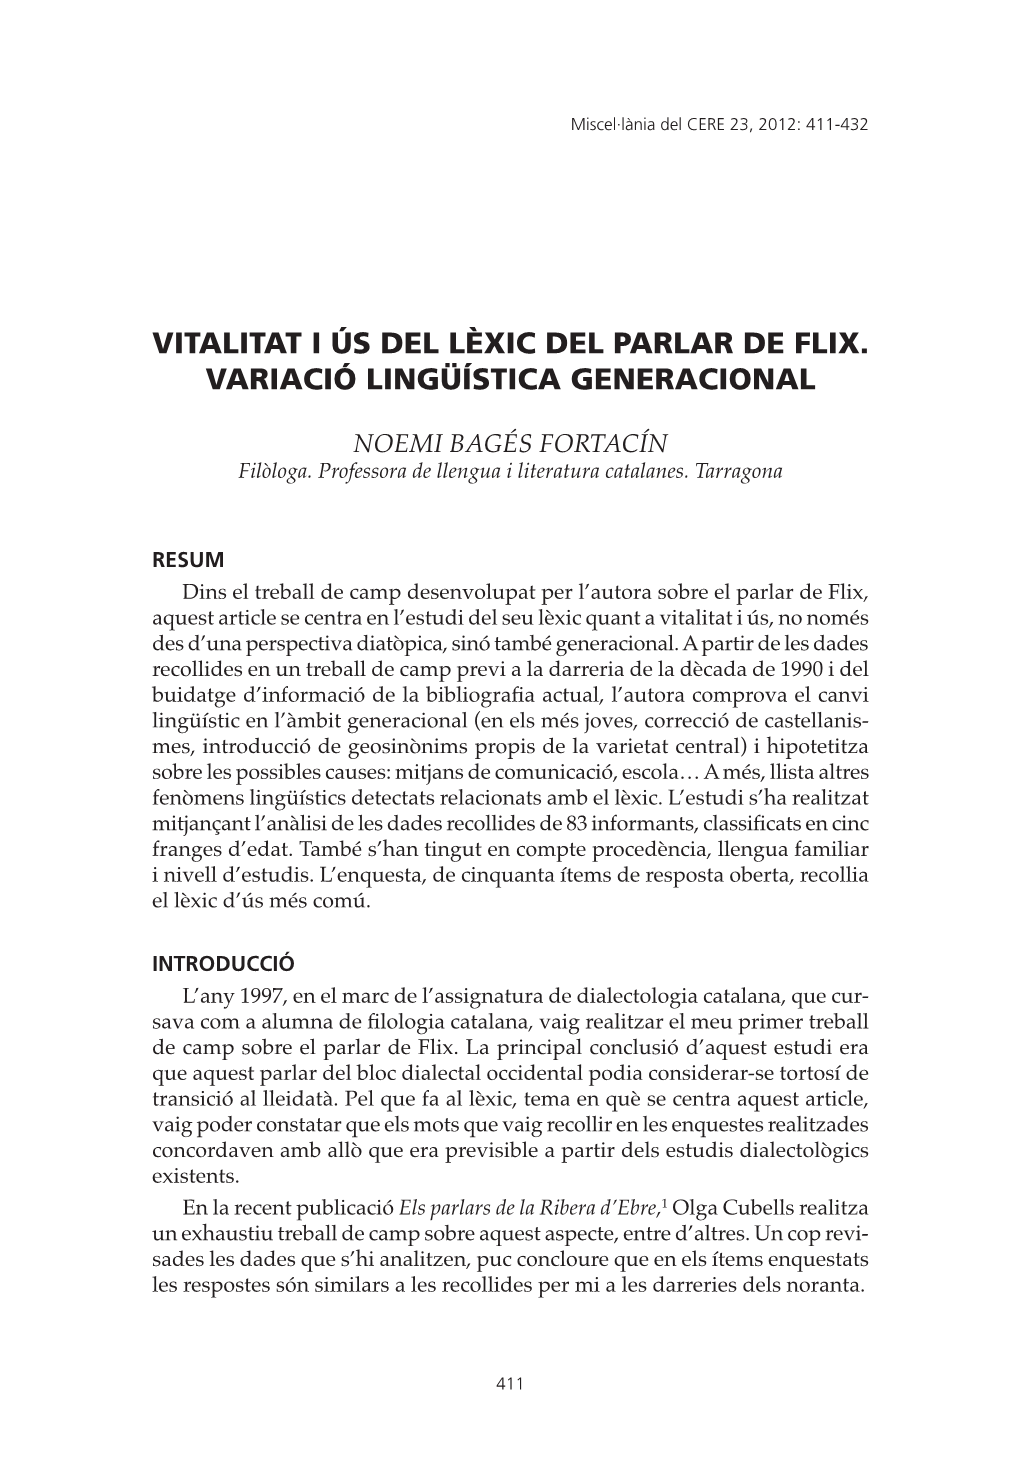 Vitalitat I Ús Del Lèxic Del Parlar De Flix. Variació Lingüística Generacional